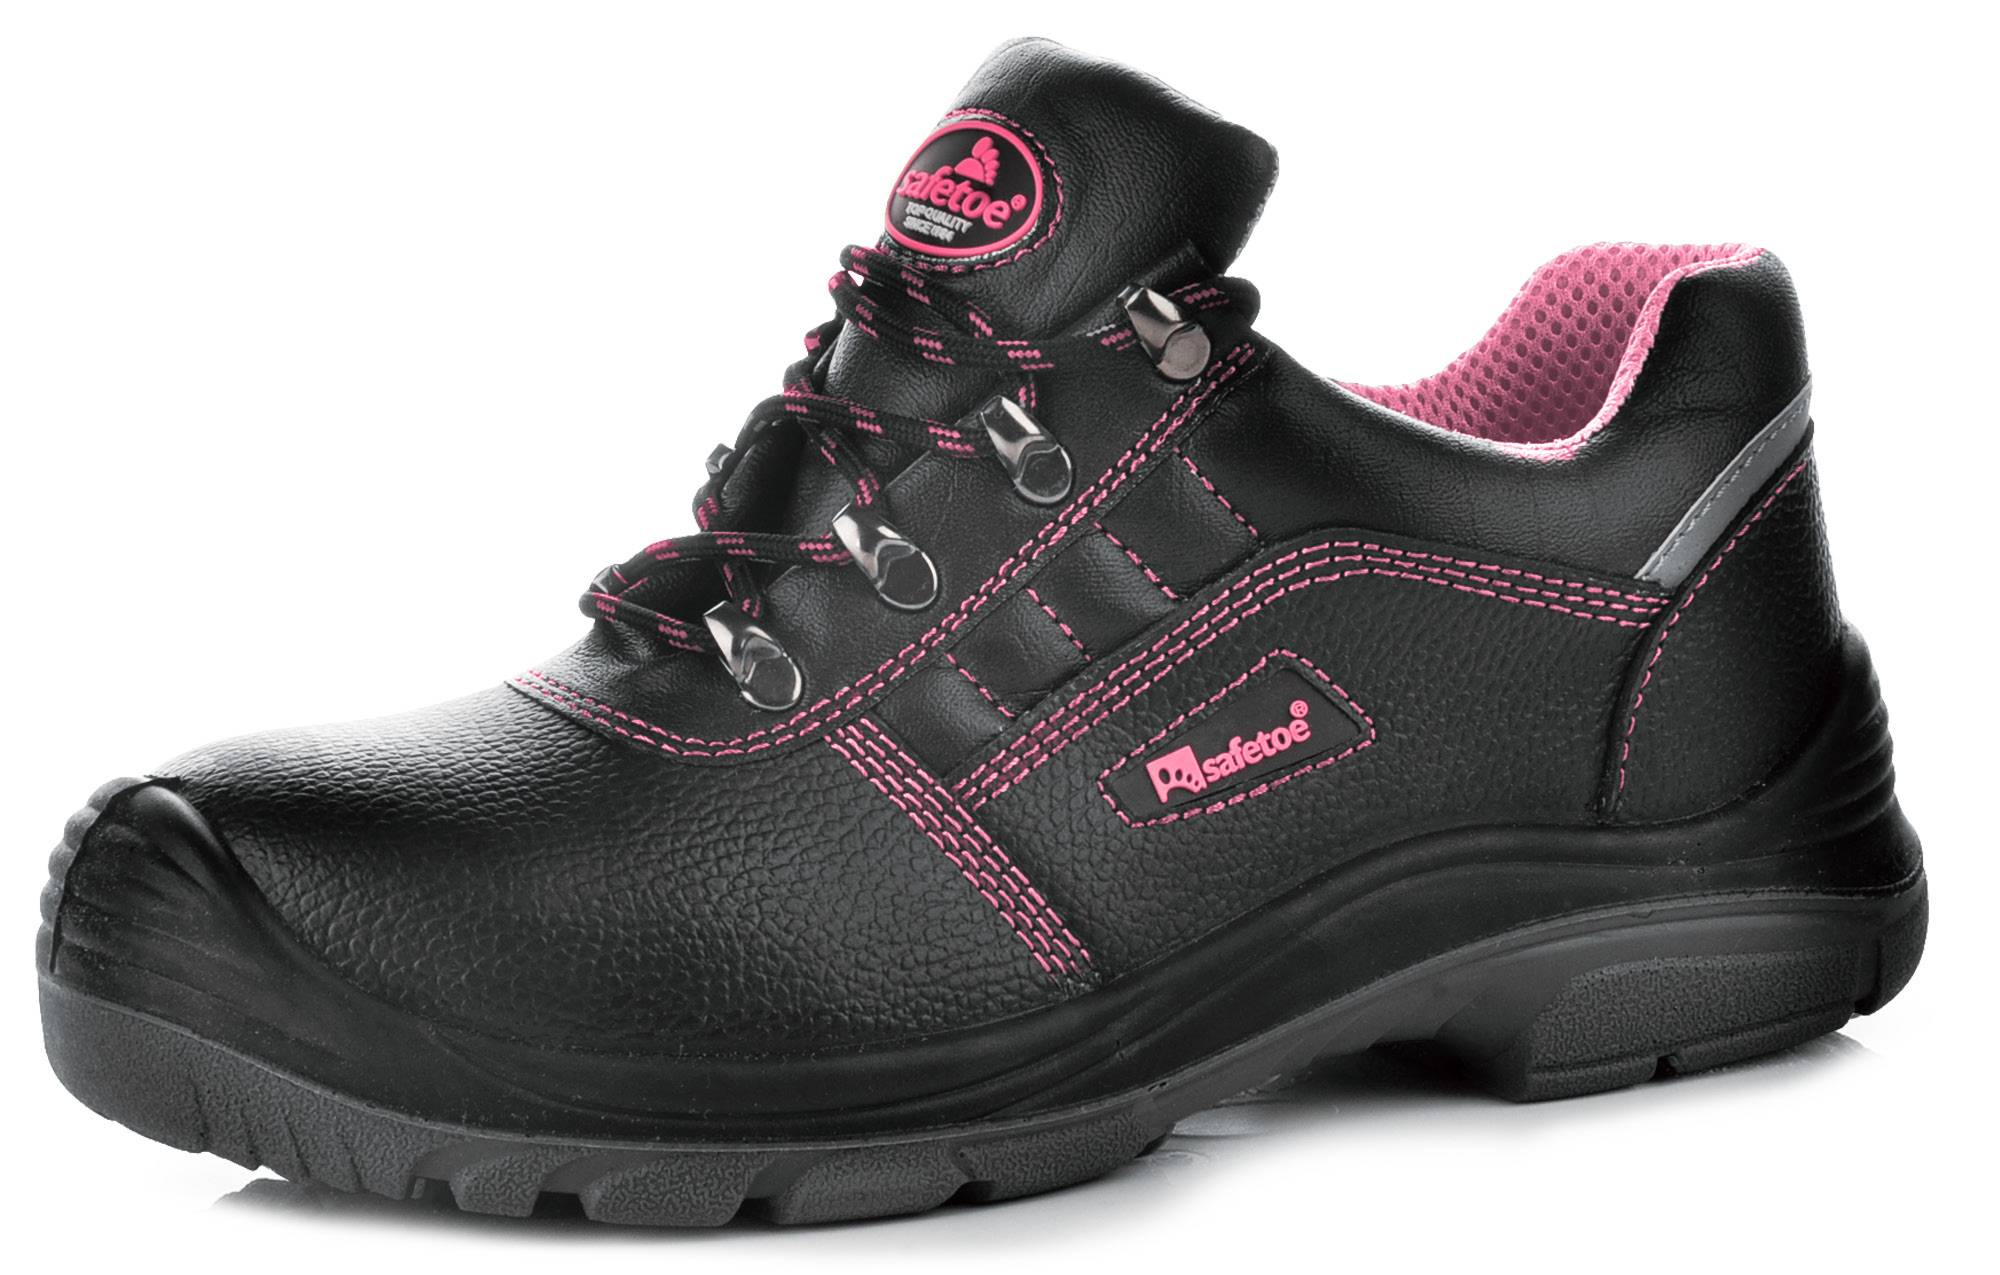 Zapatos de Seguridad Mujer Piel Industrial L-7163 Dama